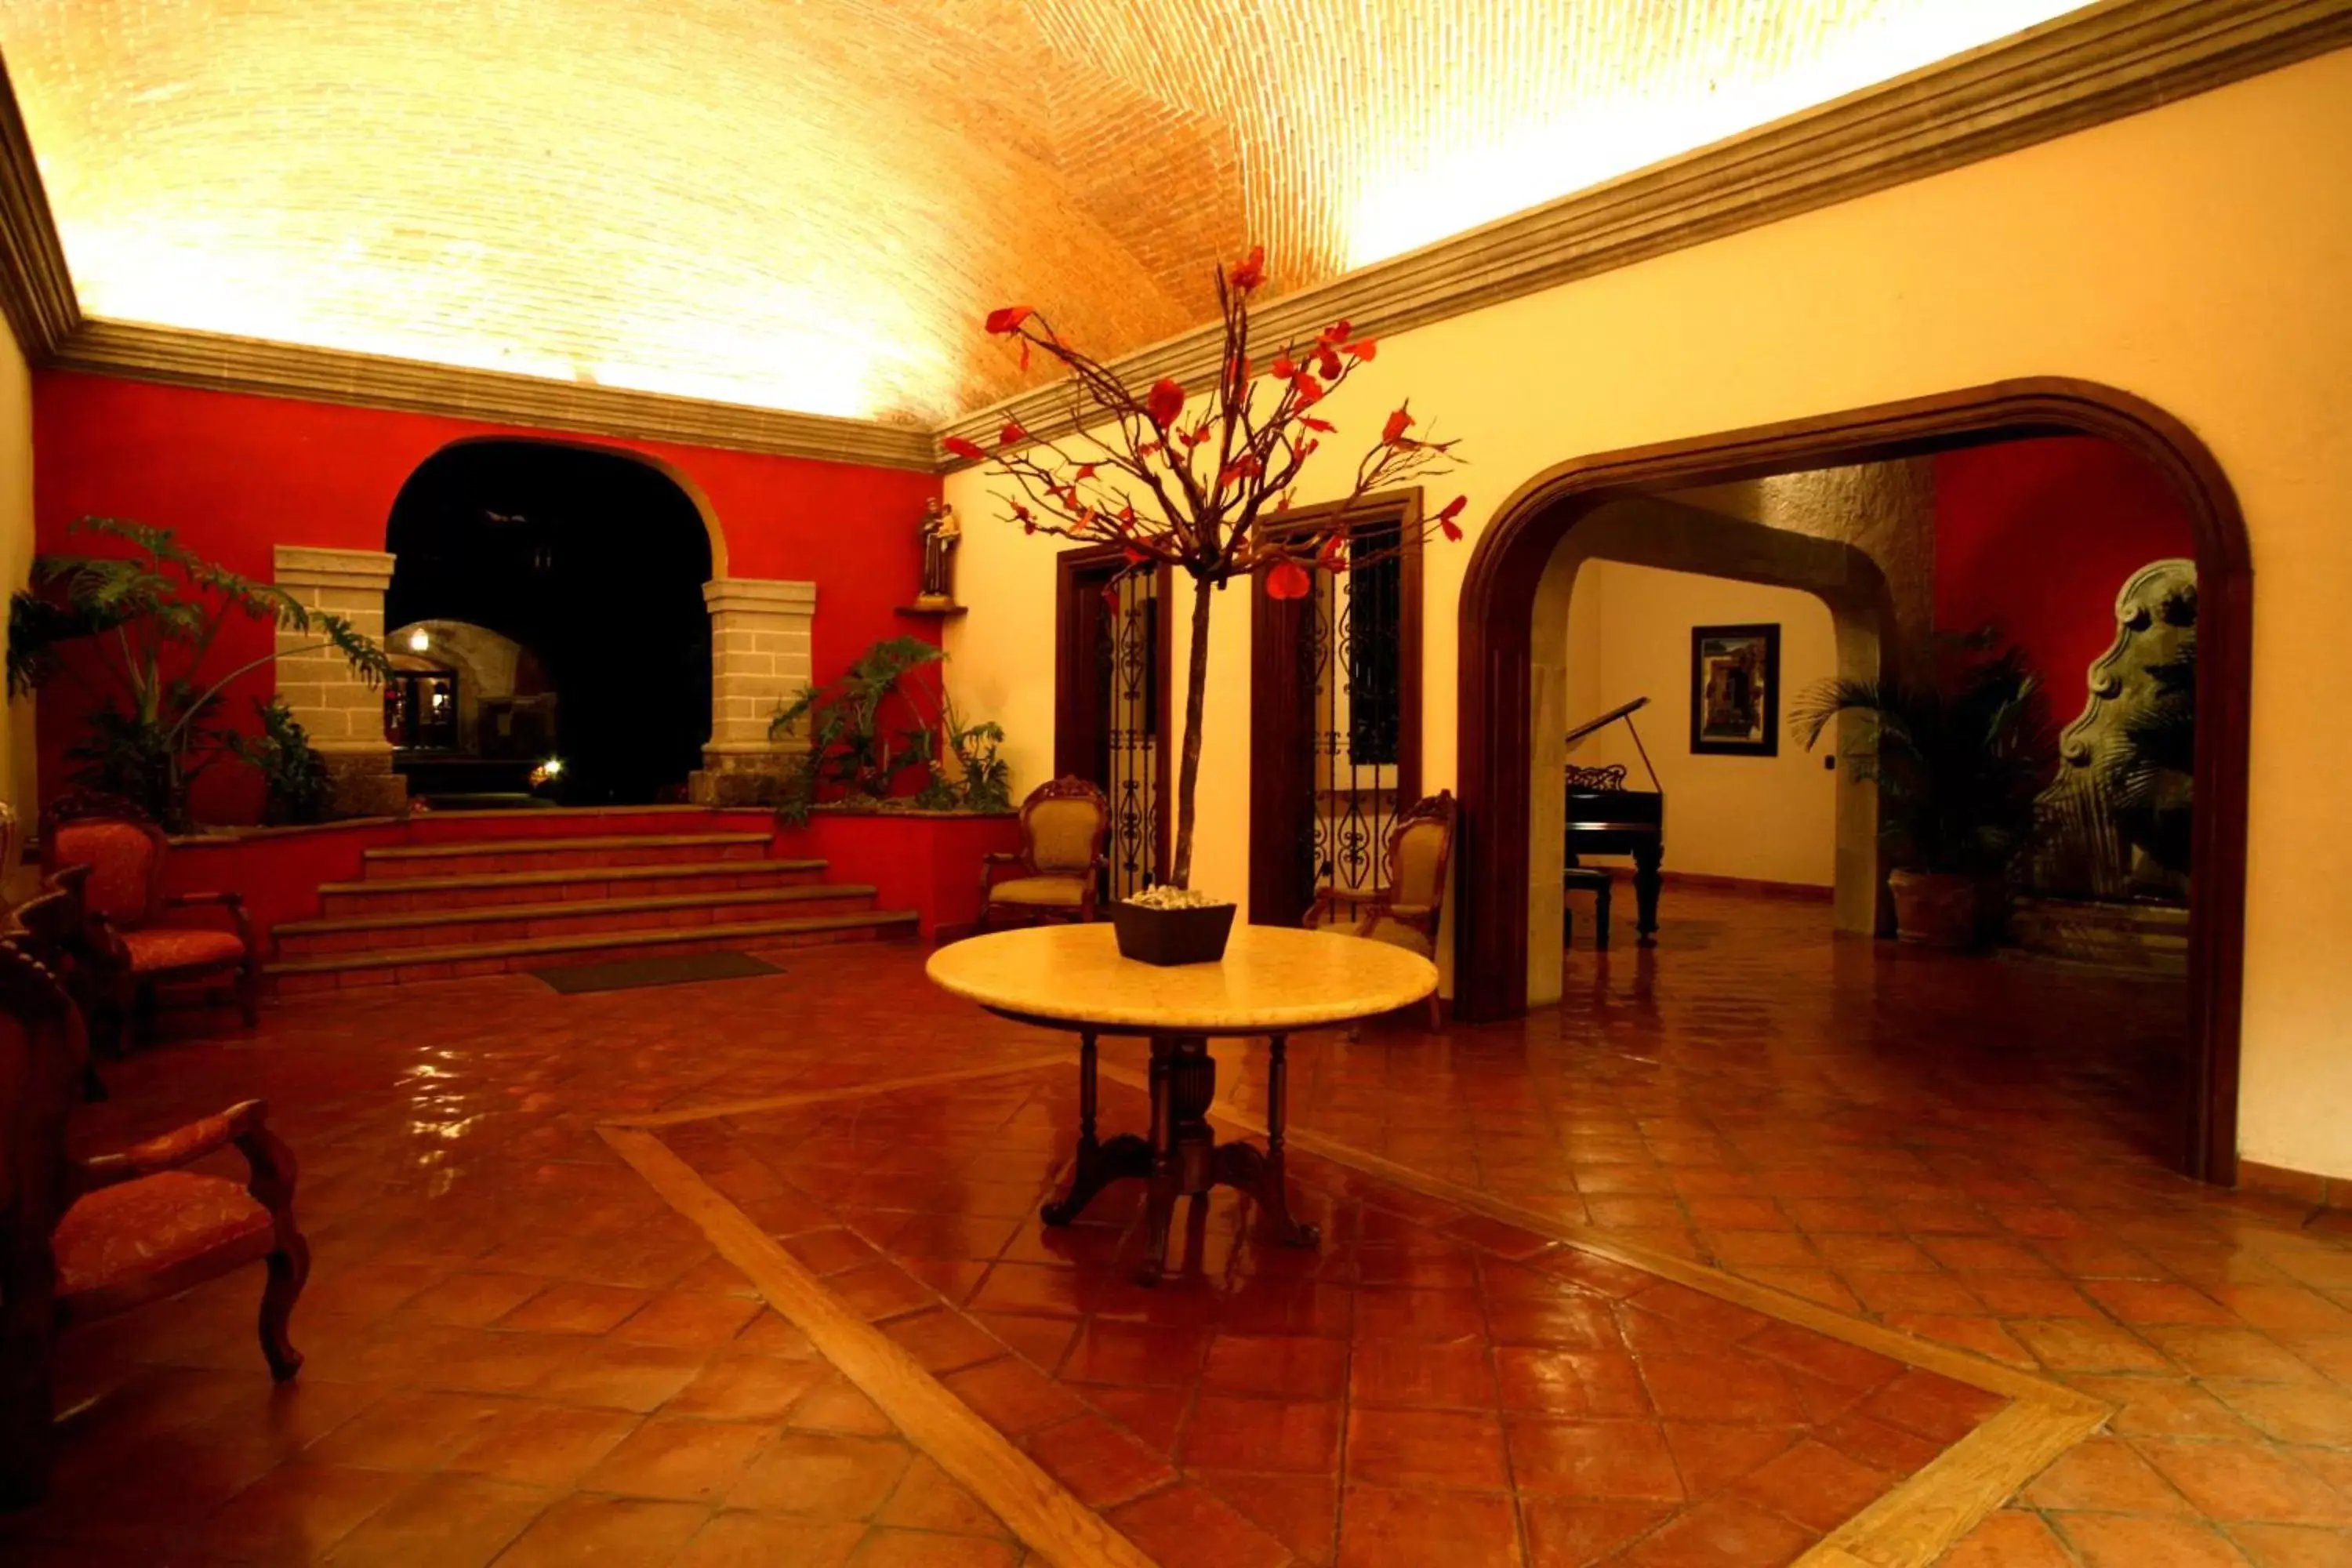 Lobby or reception in Fiesta Americana Hacienda San Antonio El Puente Cuernavaca